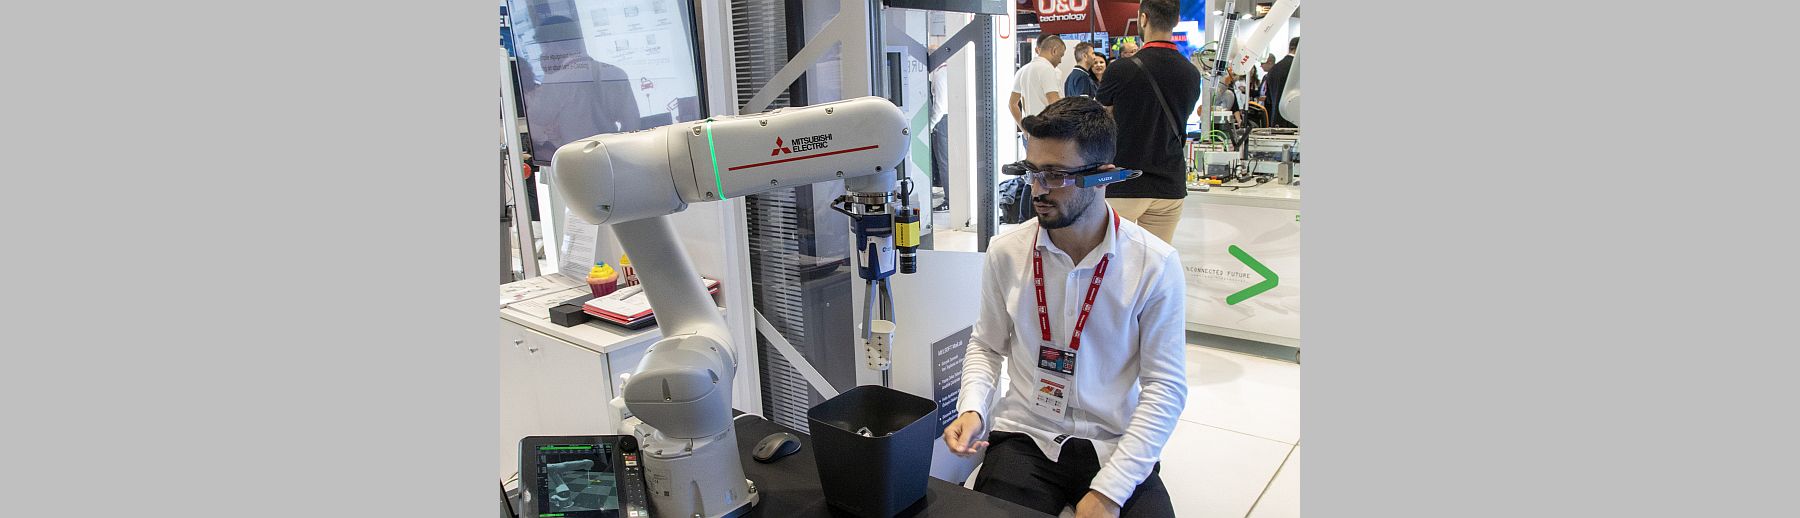 Mitsubishi Electric Türkiye'nin kolaboratif robotu Dünya Çevre Günü'nde çevre bilincine katkıda bulundu